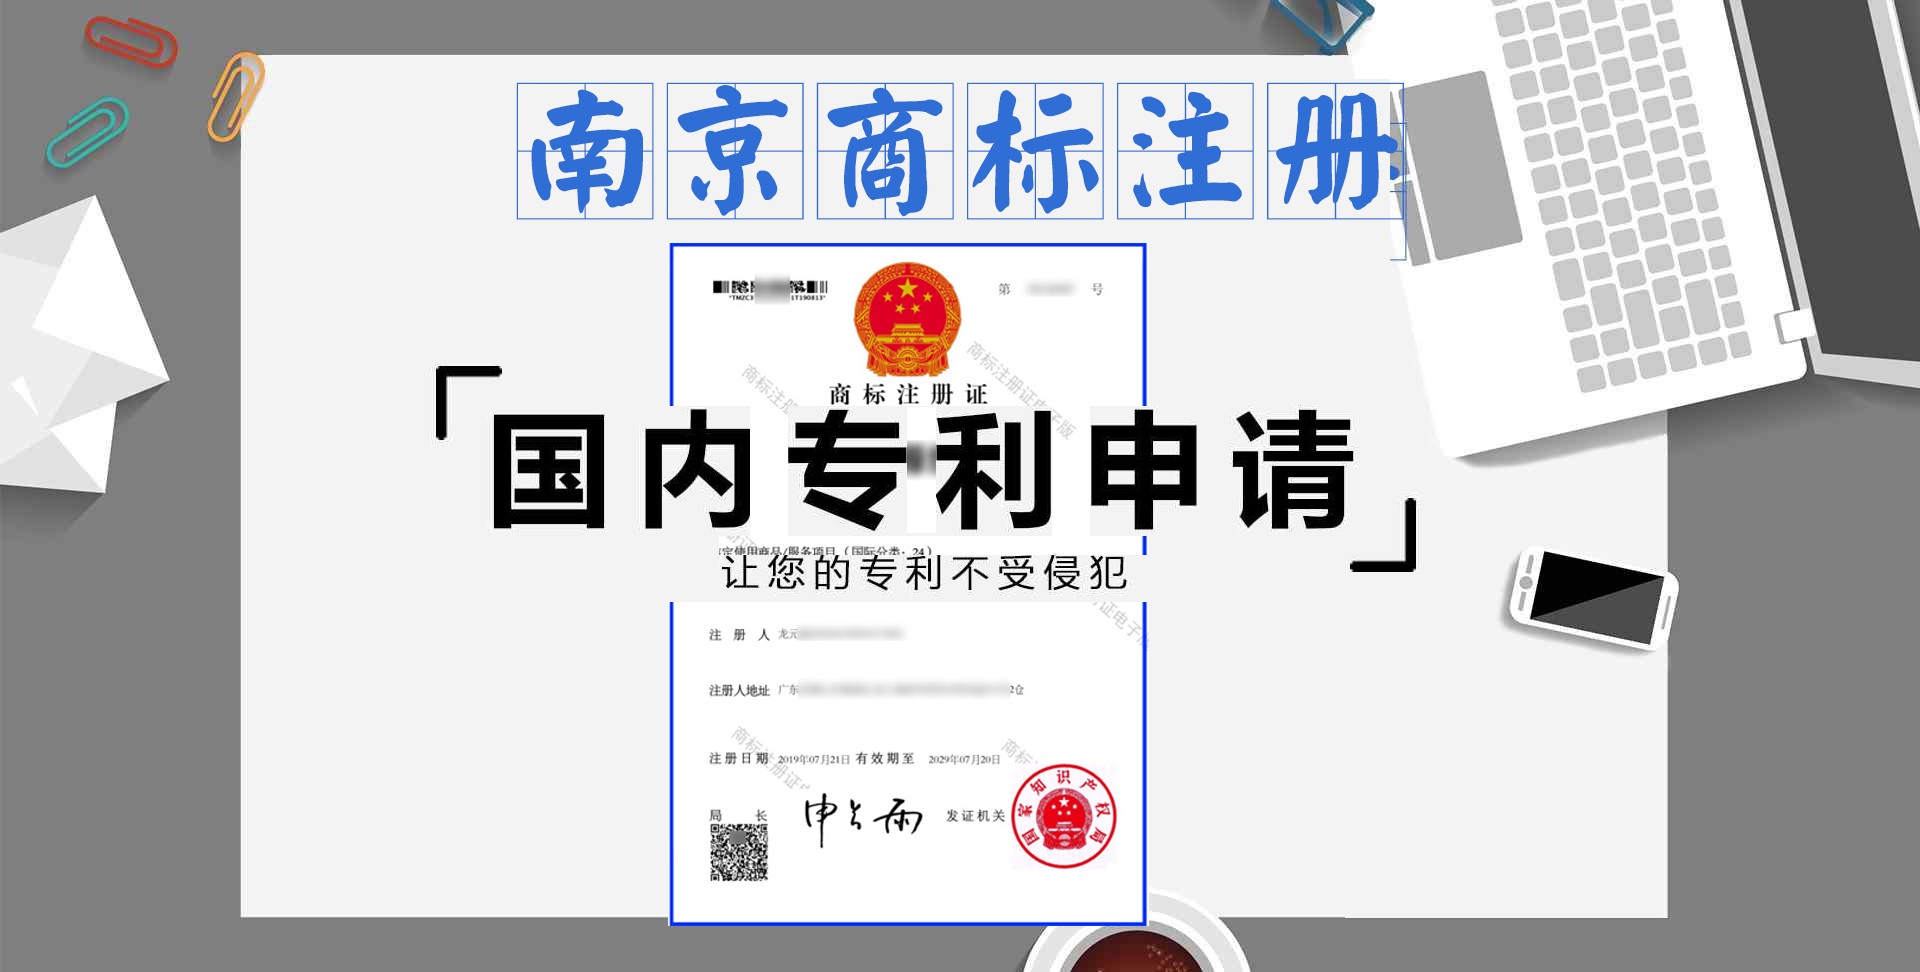 南京注册商标要到哪里-注册商标多少钱-注册流程